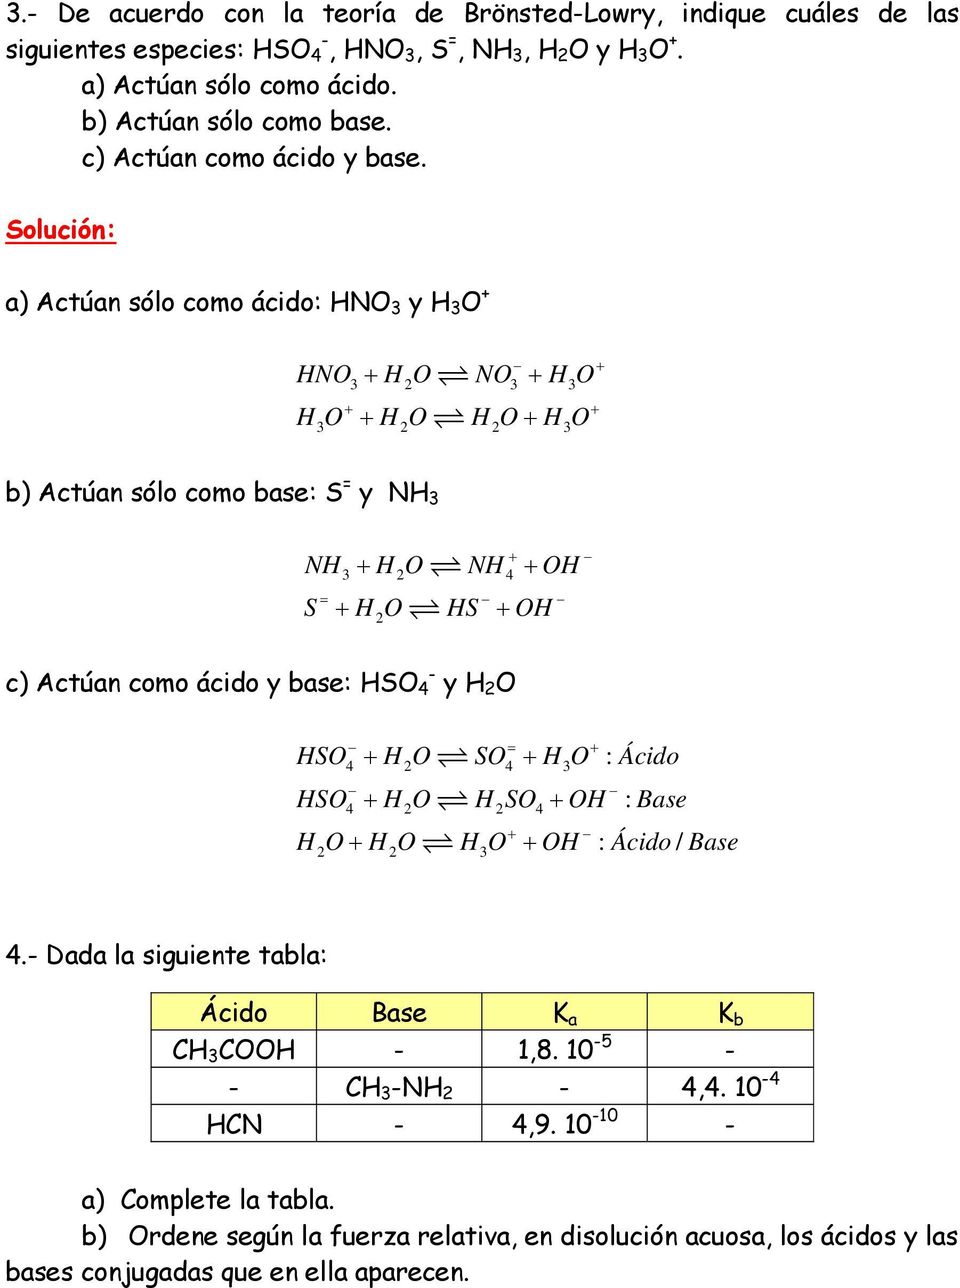 a) Actúan sólo como ácido: HNO 3 y H 3 O + HNO + H O NO + H O + 3 3 3 H O + H O H O+ H O + + 3 3 b) Actúan sólo como base: S y NH 3 NH + H O NH + OH + 3 4 S + H O HS + OH c) Actúan como ácido y